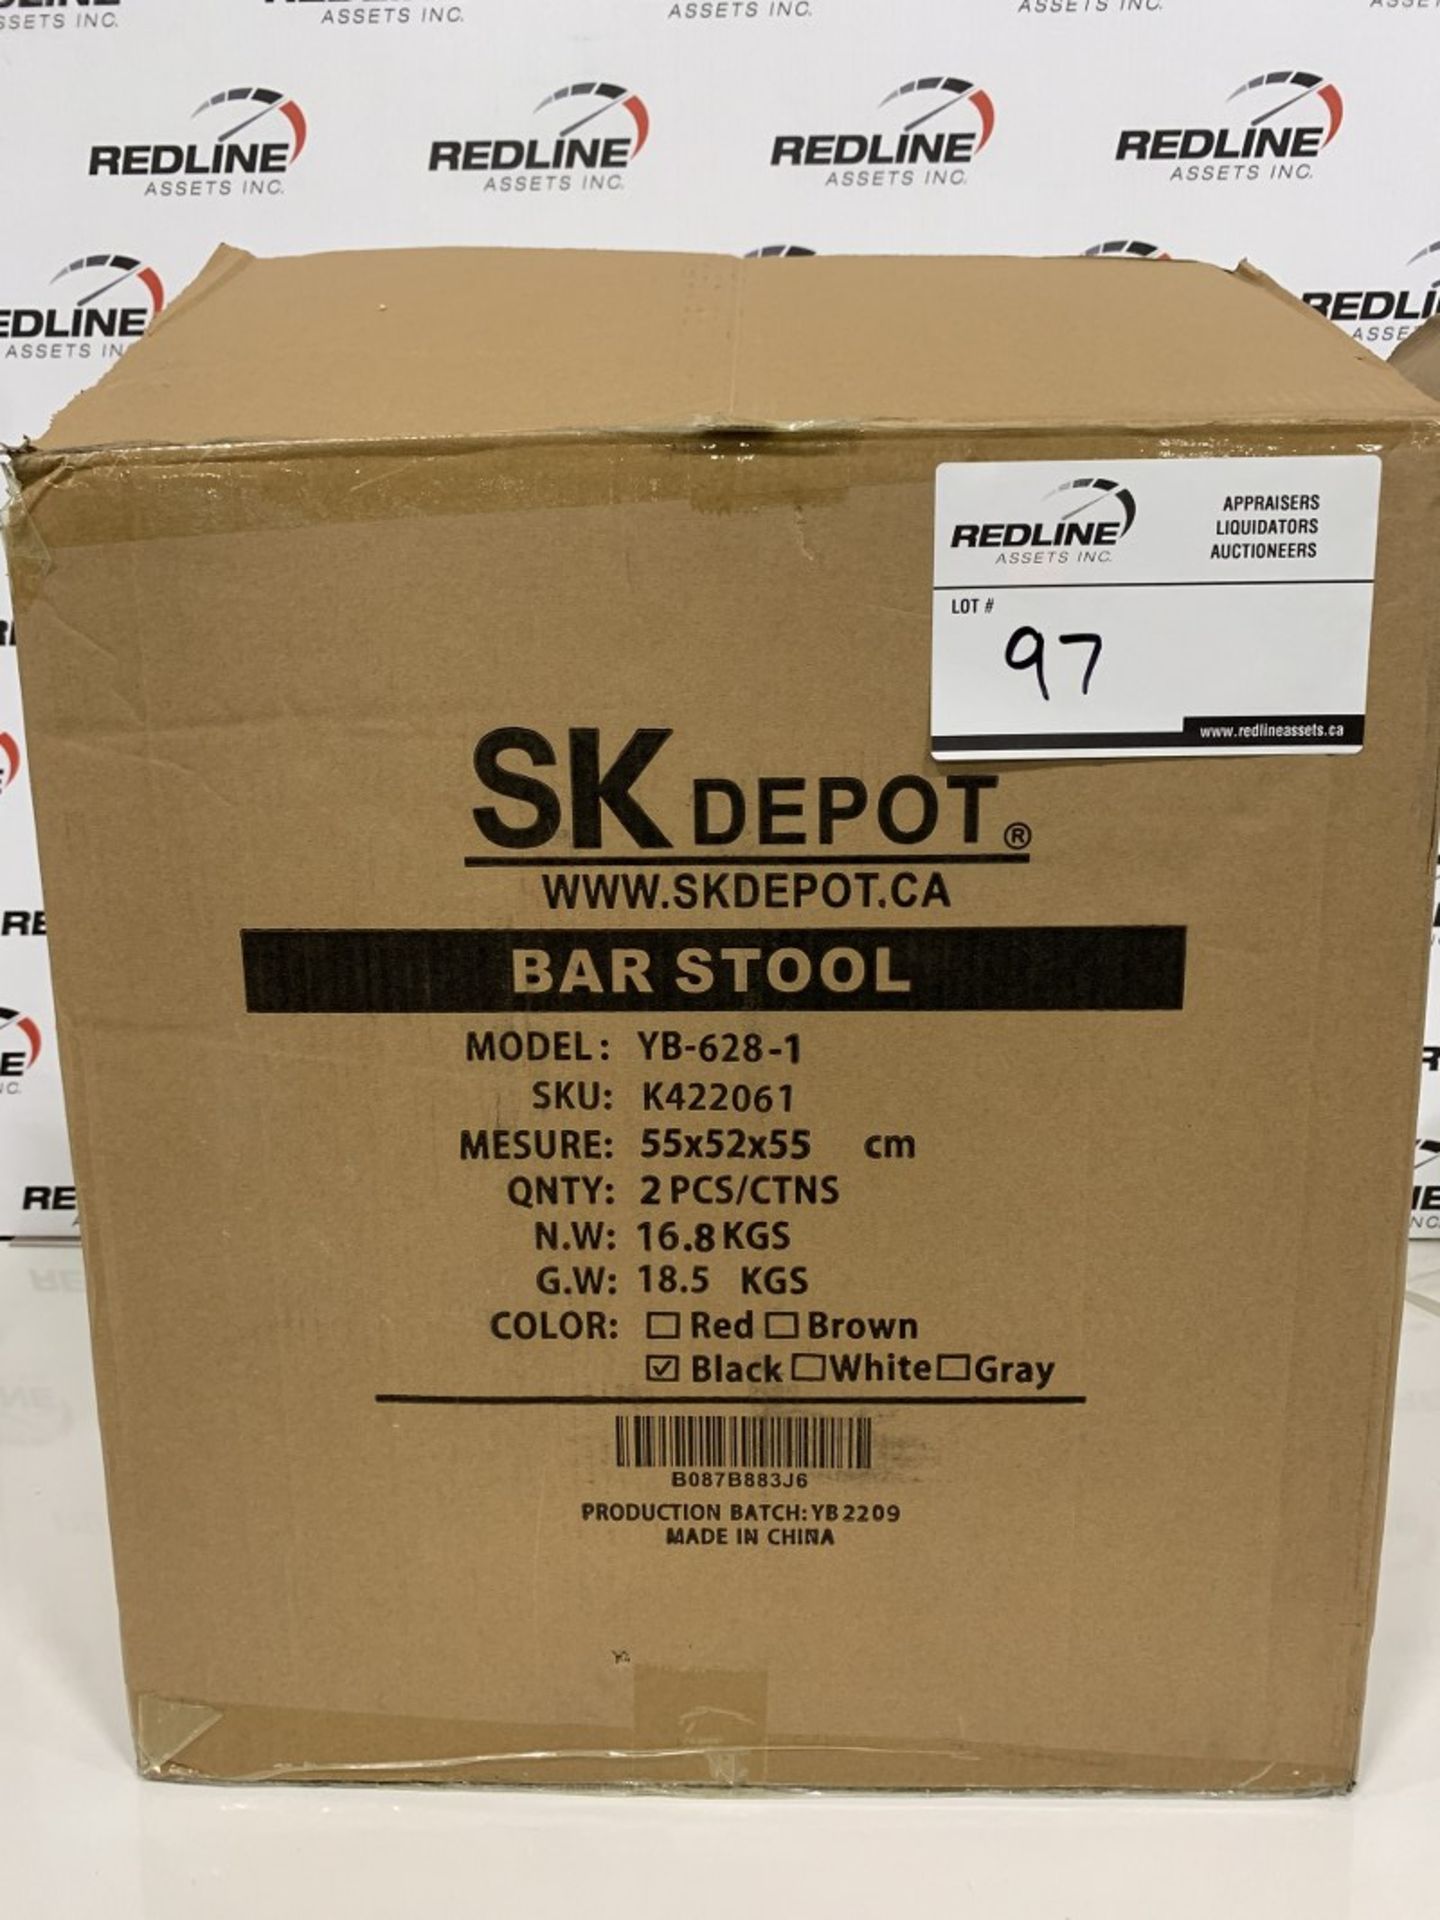 SK DEPOT - BAR STOOL 2 PCS/BOX